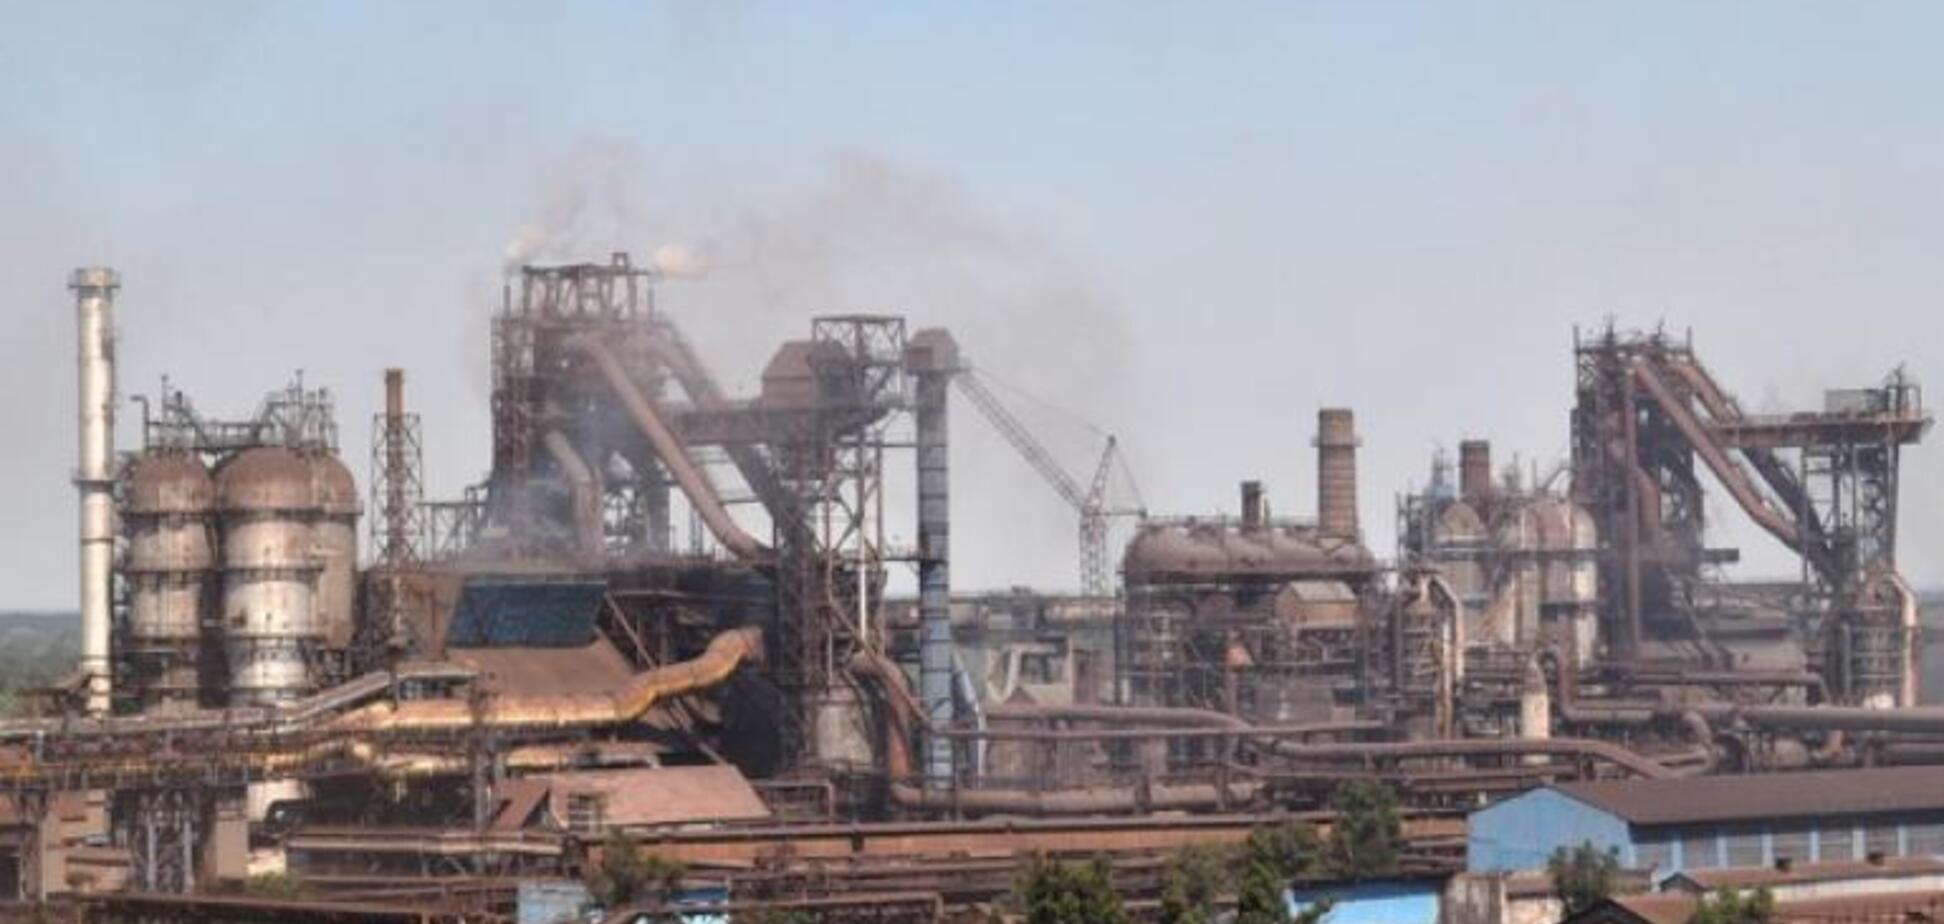 Закон 1210 може зупинити металургійний завод в Кам'янському: гірники звернулися до Зеленського. Відео